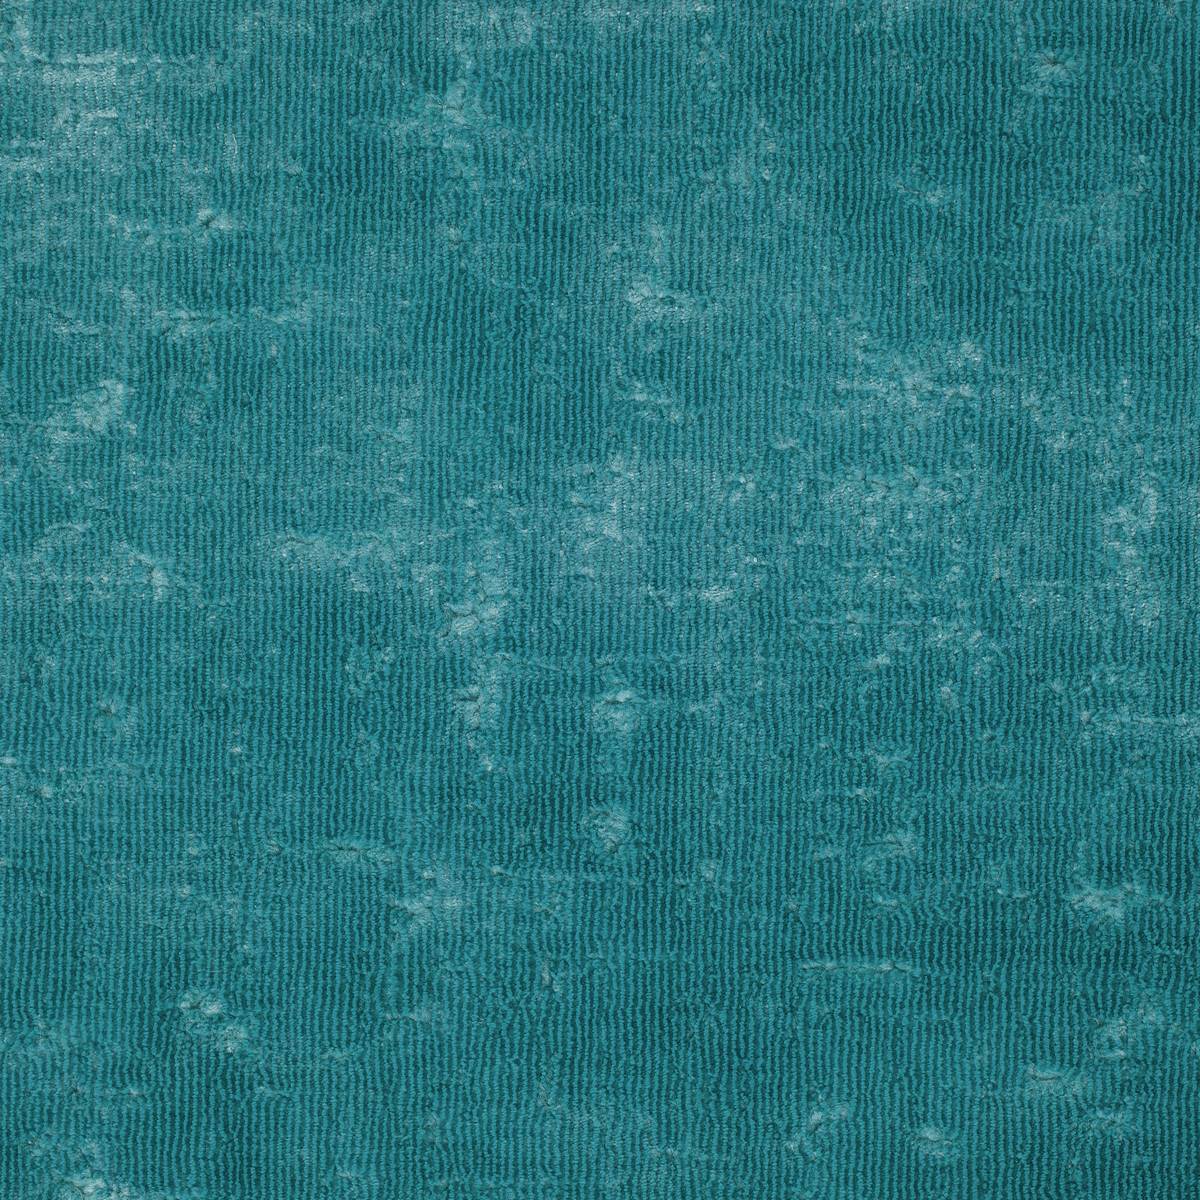 Curzon Aqua Fabric by Zoffany